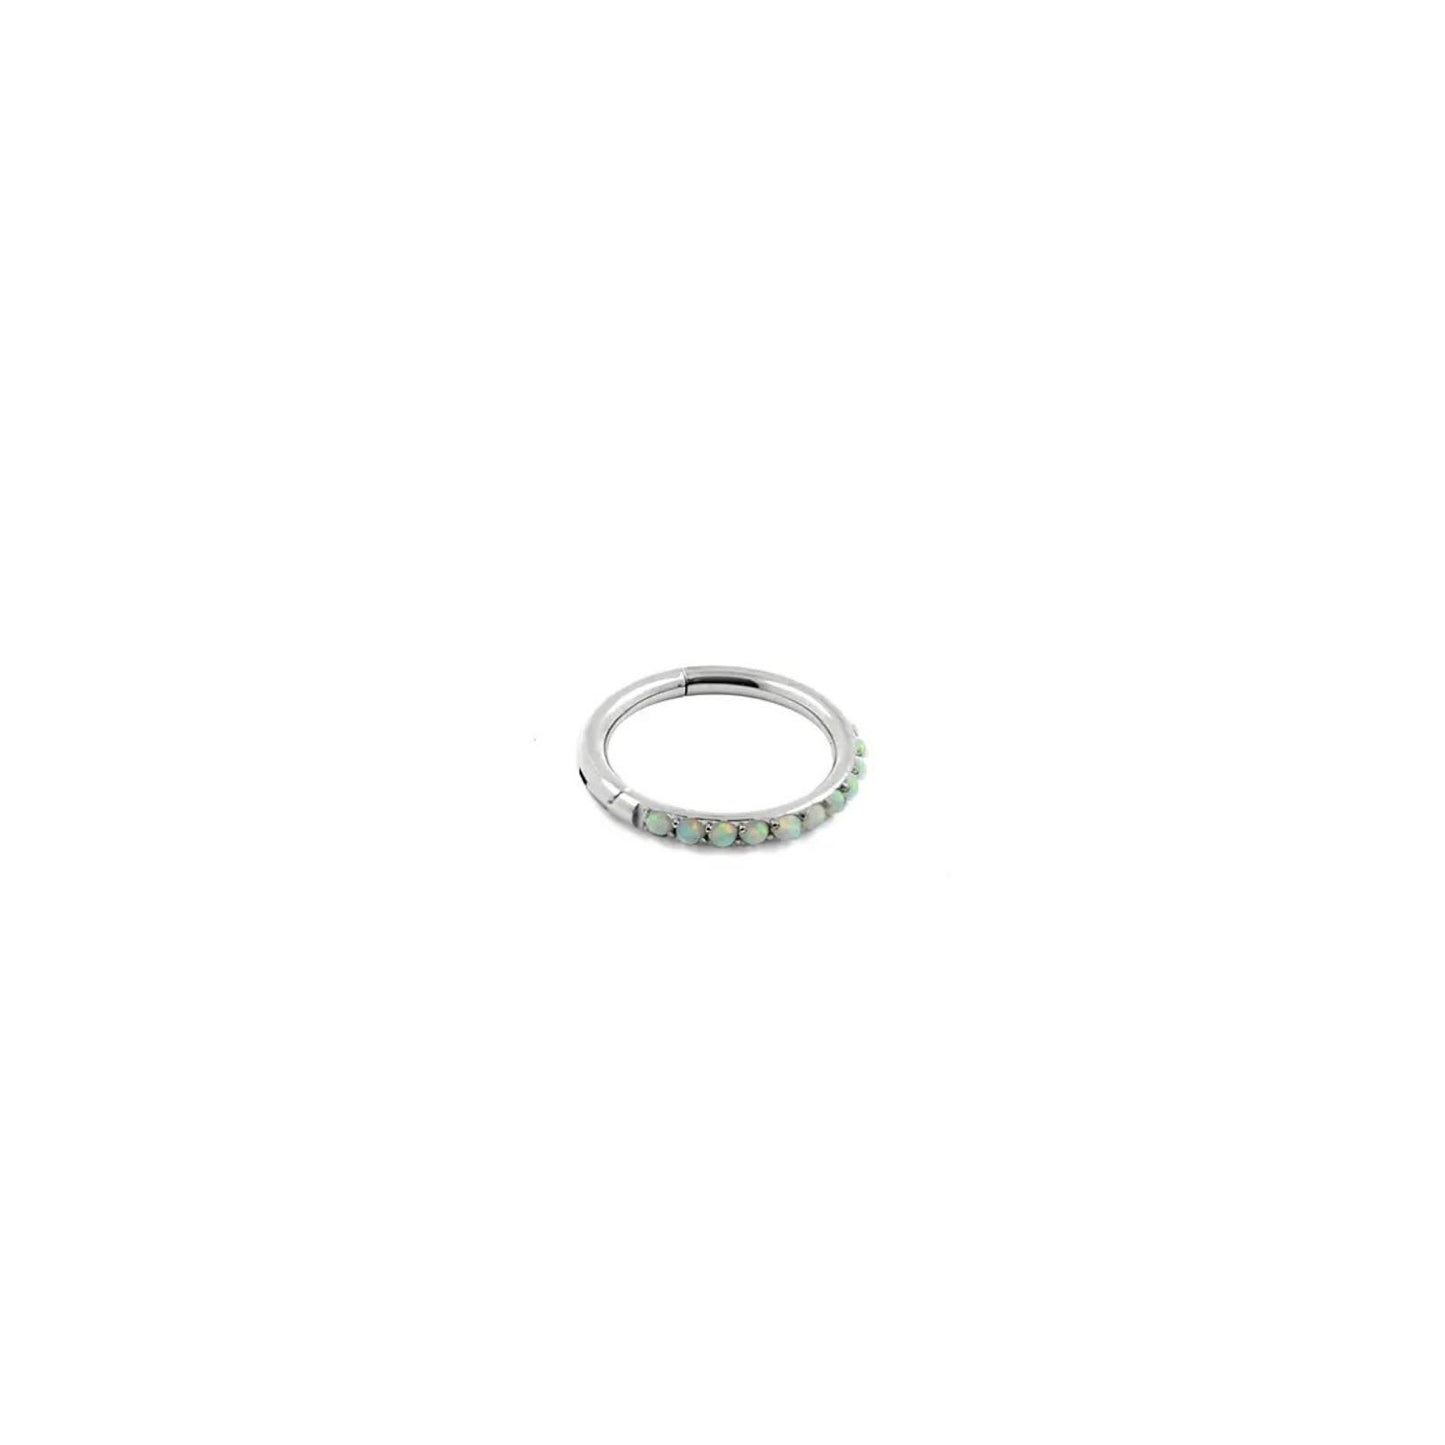 Argolla titanio ASTM F136 - Segment ring con línea de ópalos lateral white